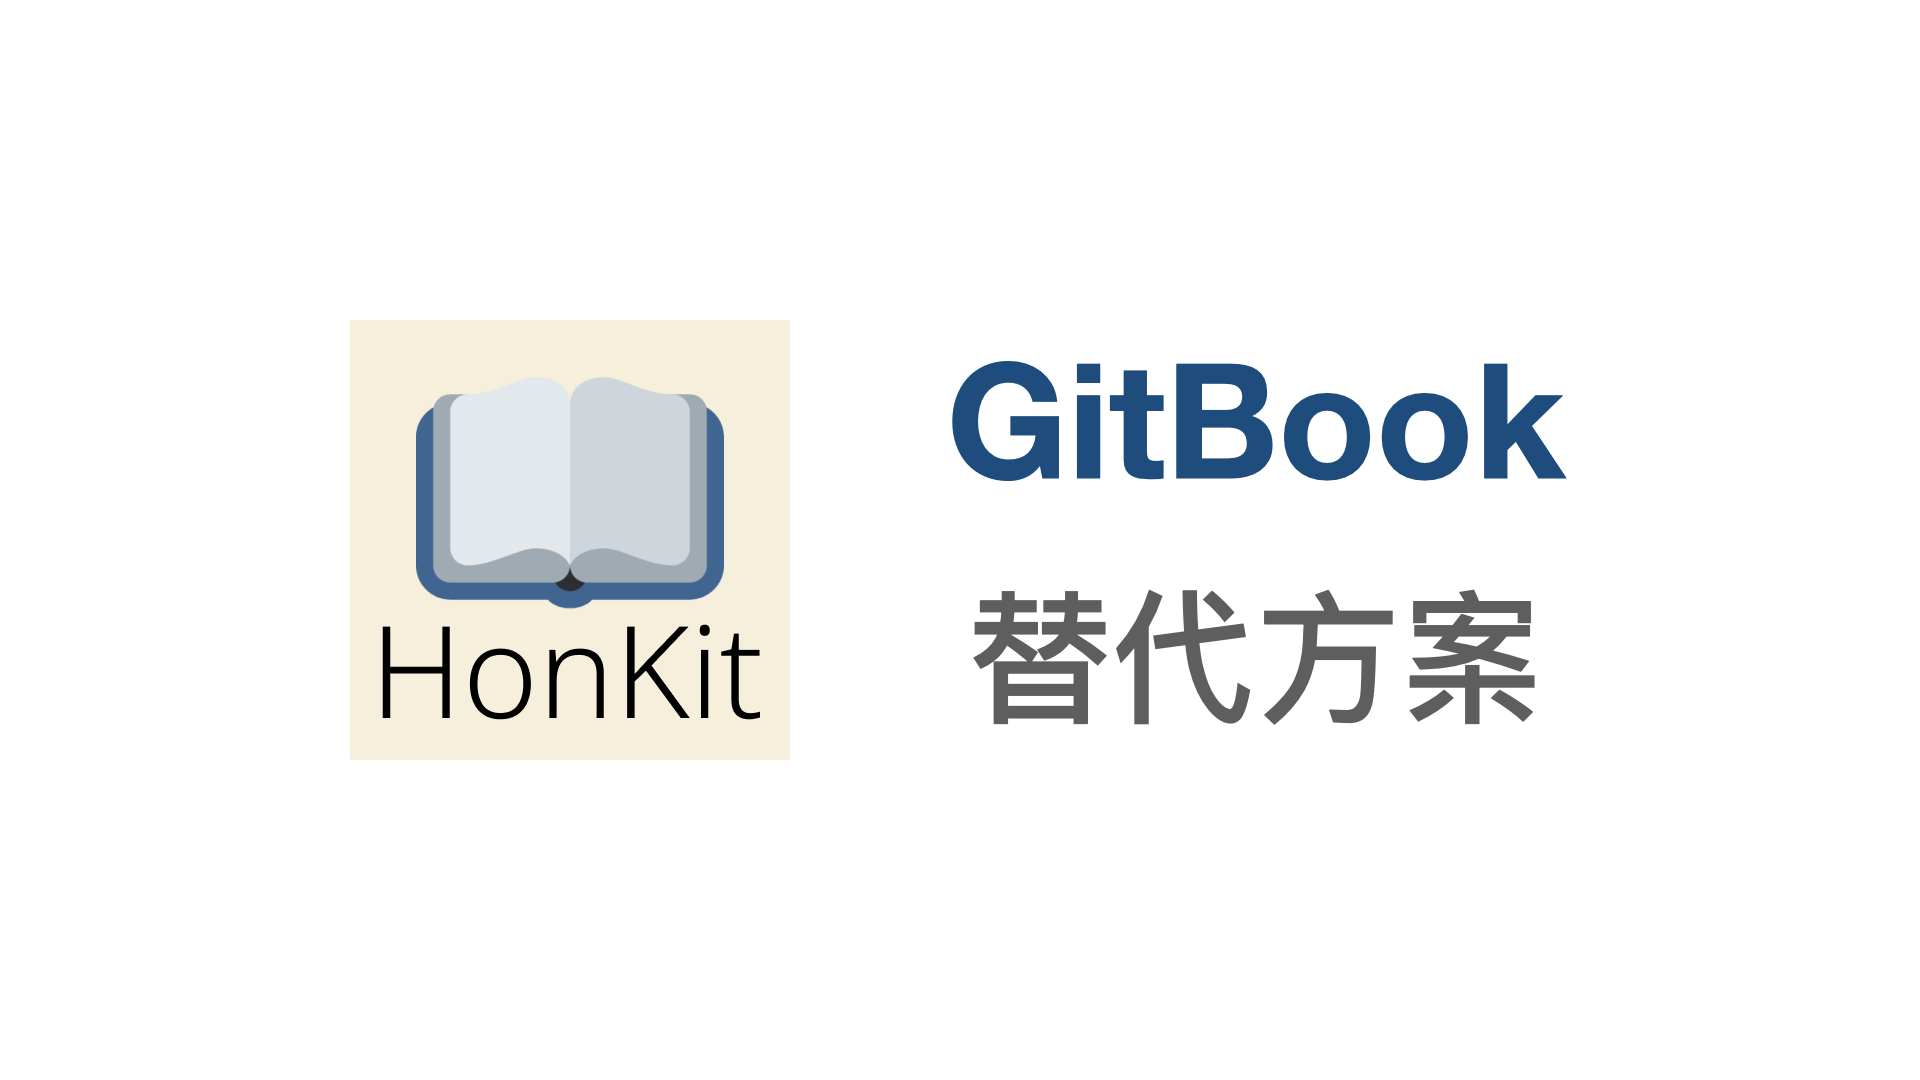 HonKit：GitBook 的替代方案